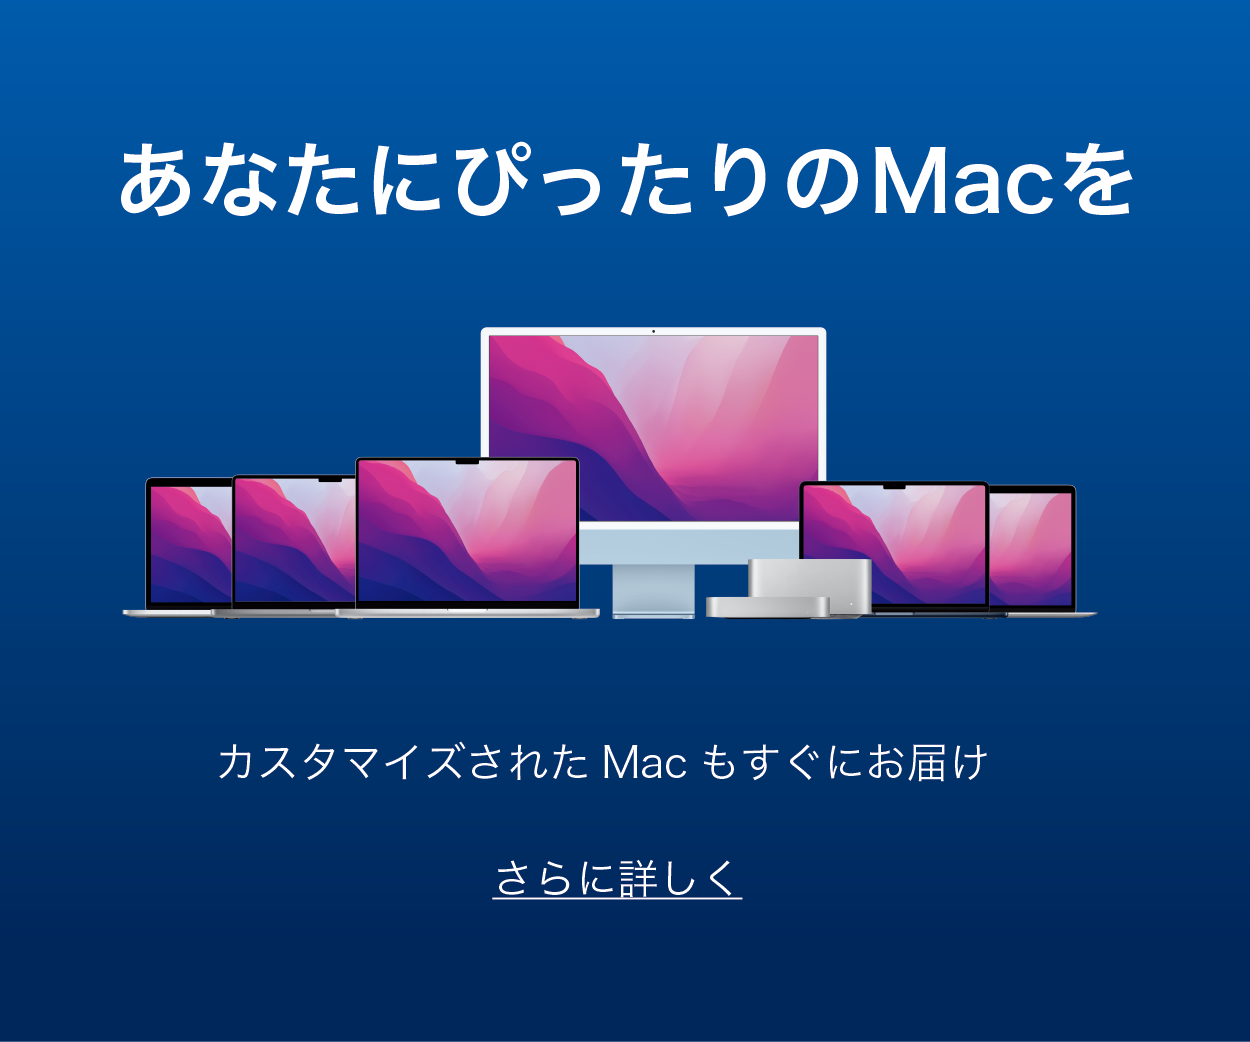 一部Macのカスタマイズモデルの販売を開始！！